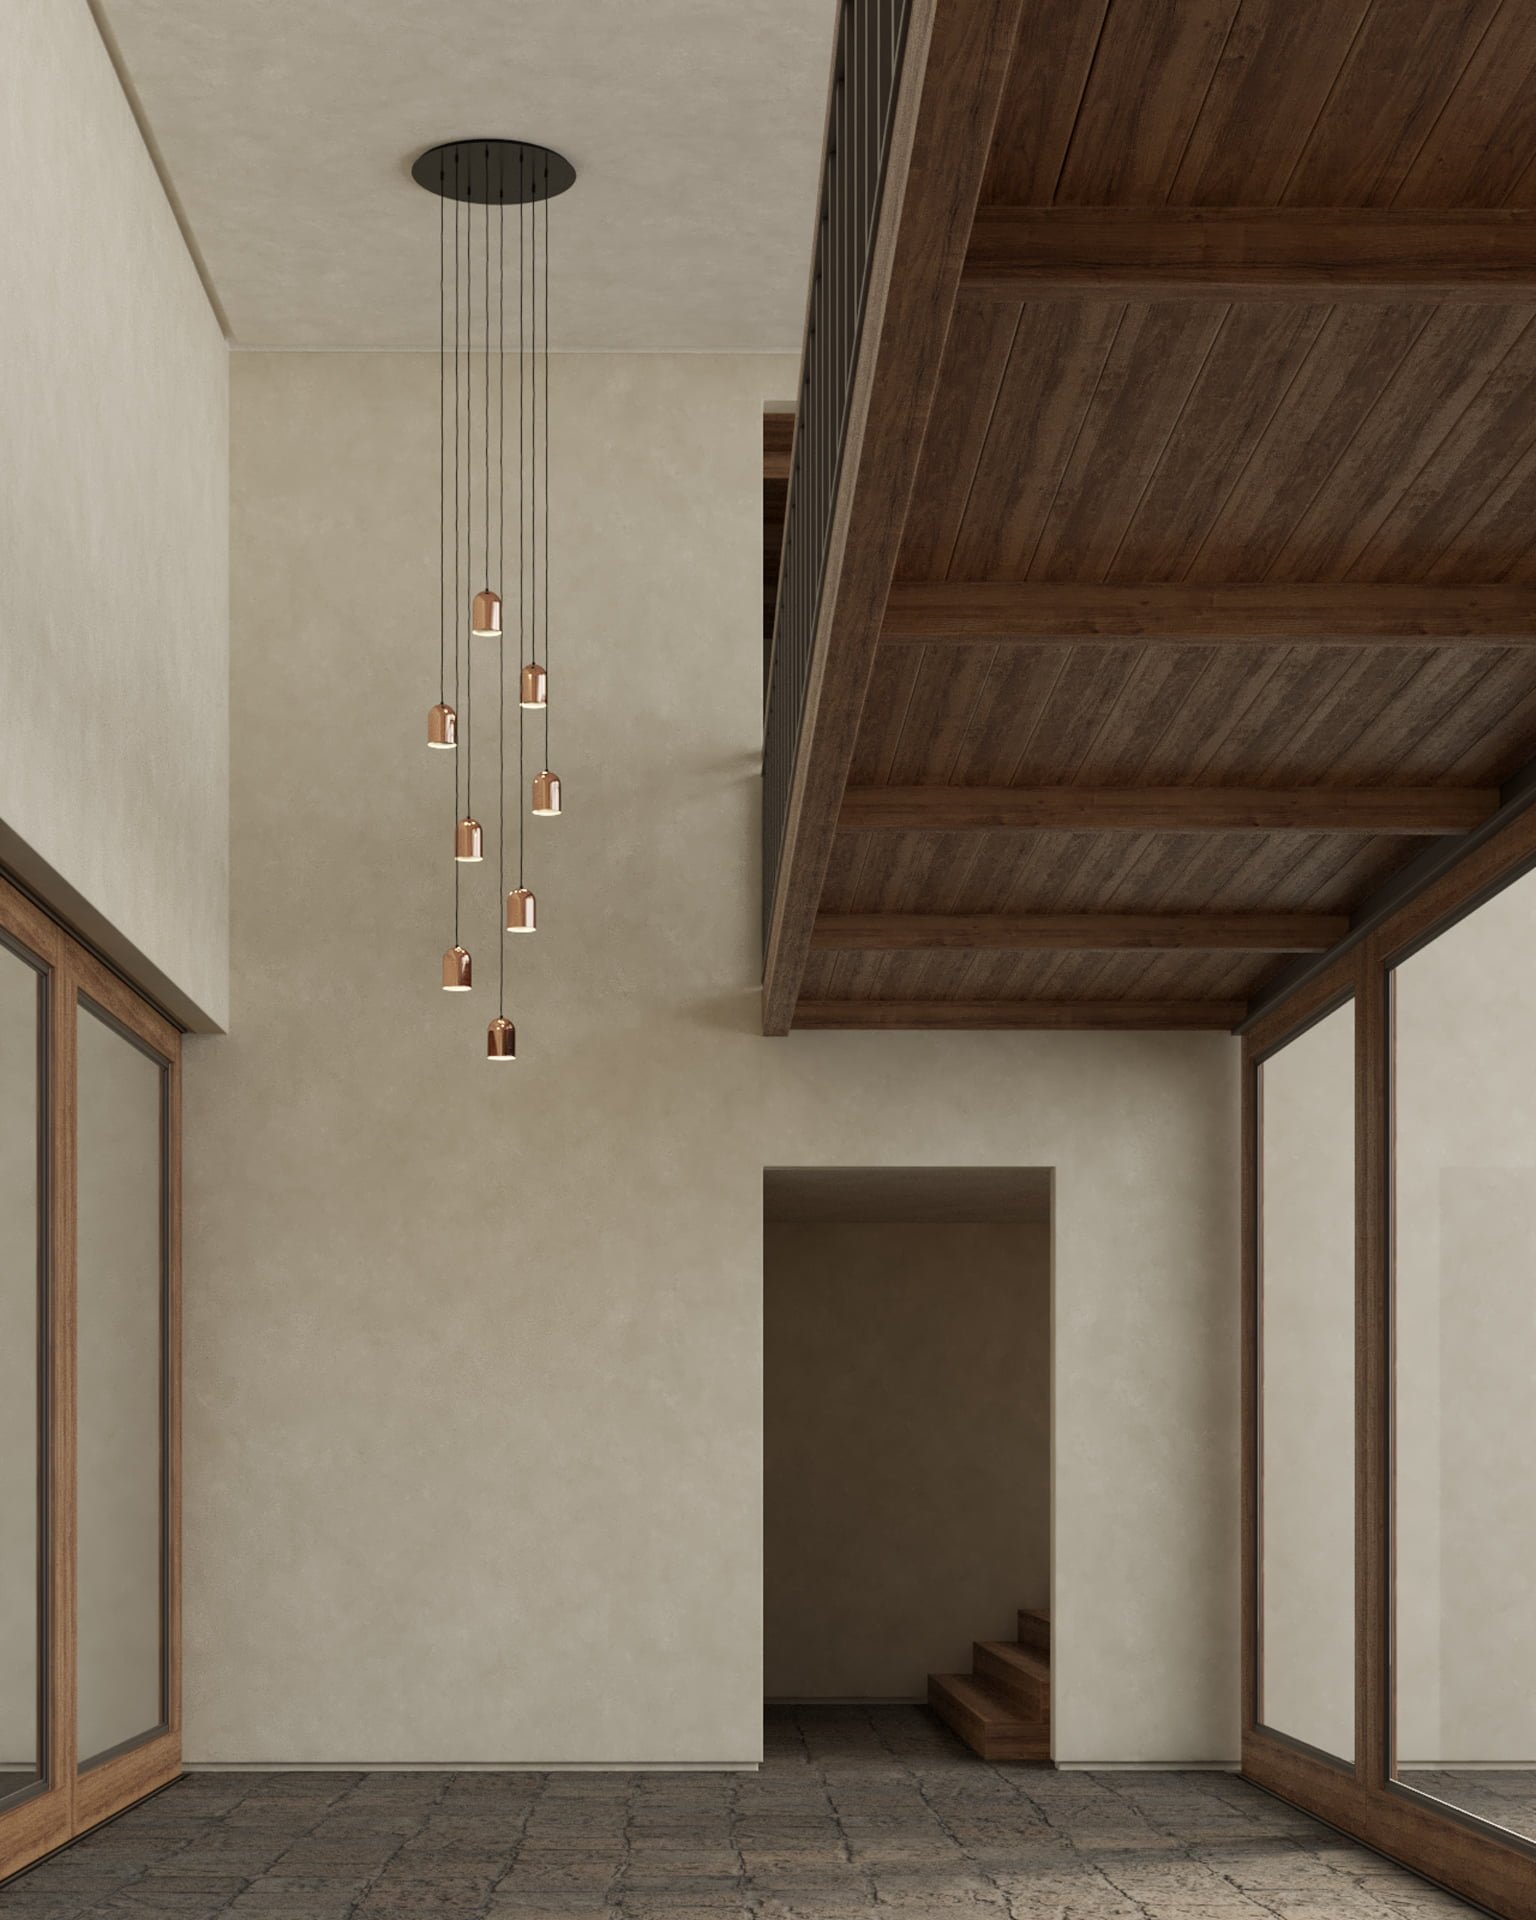 Lámparas para corredor o pasillo hechas de cobre diseñadas en México